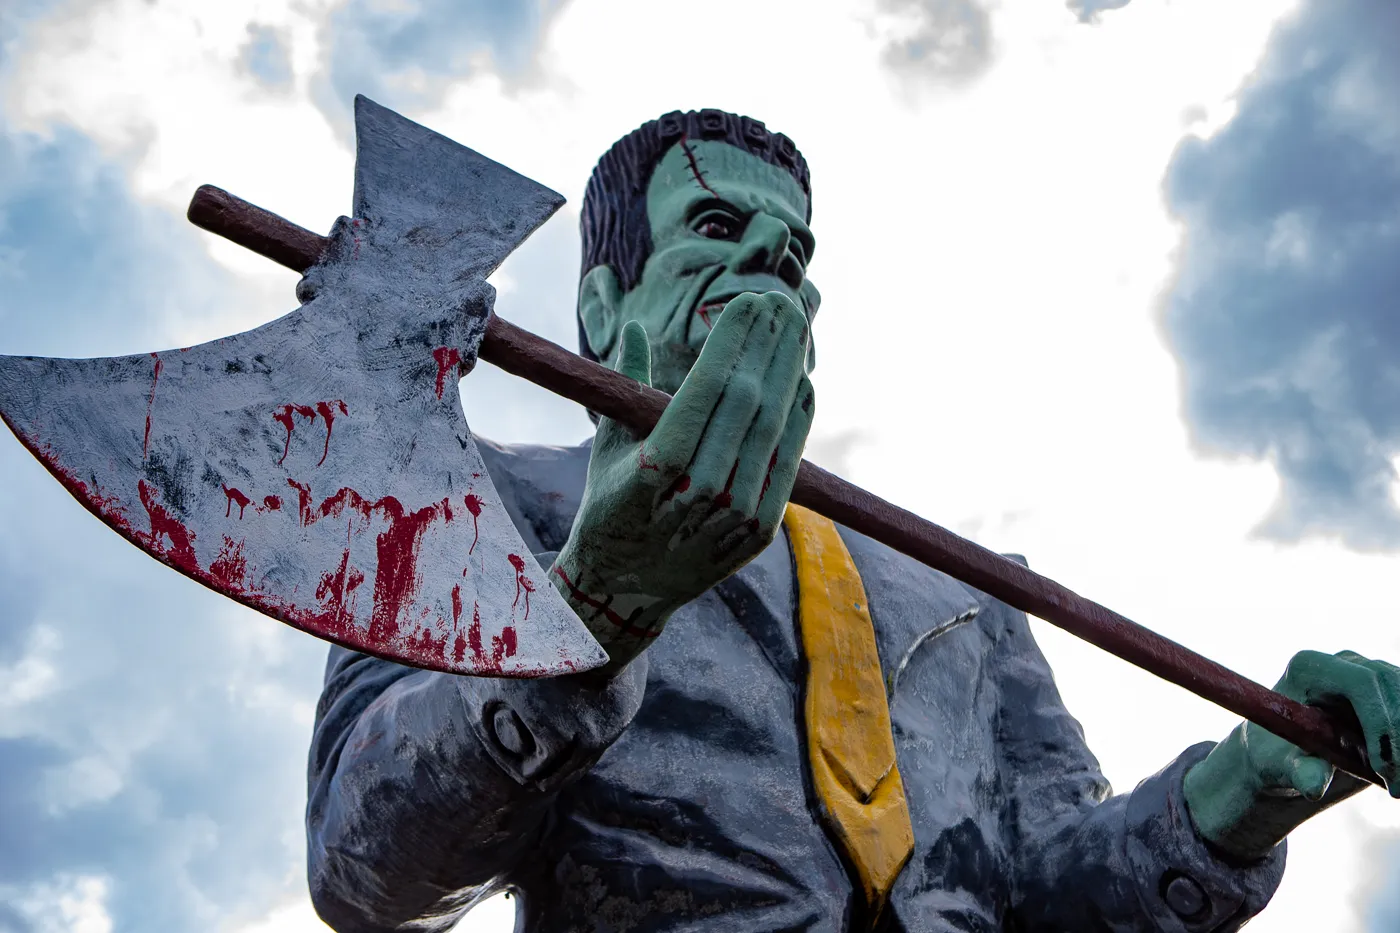 Haunted Trails Frankenstein Muffler Man in Burbank, Illinois